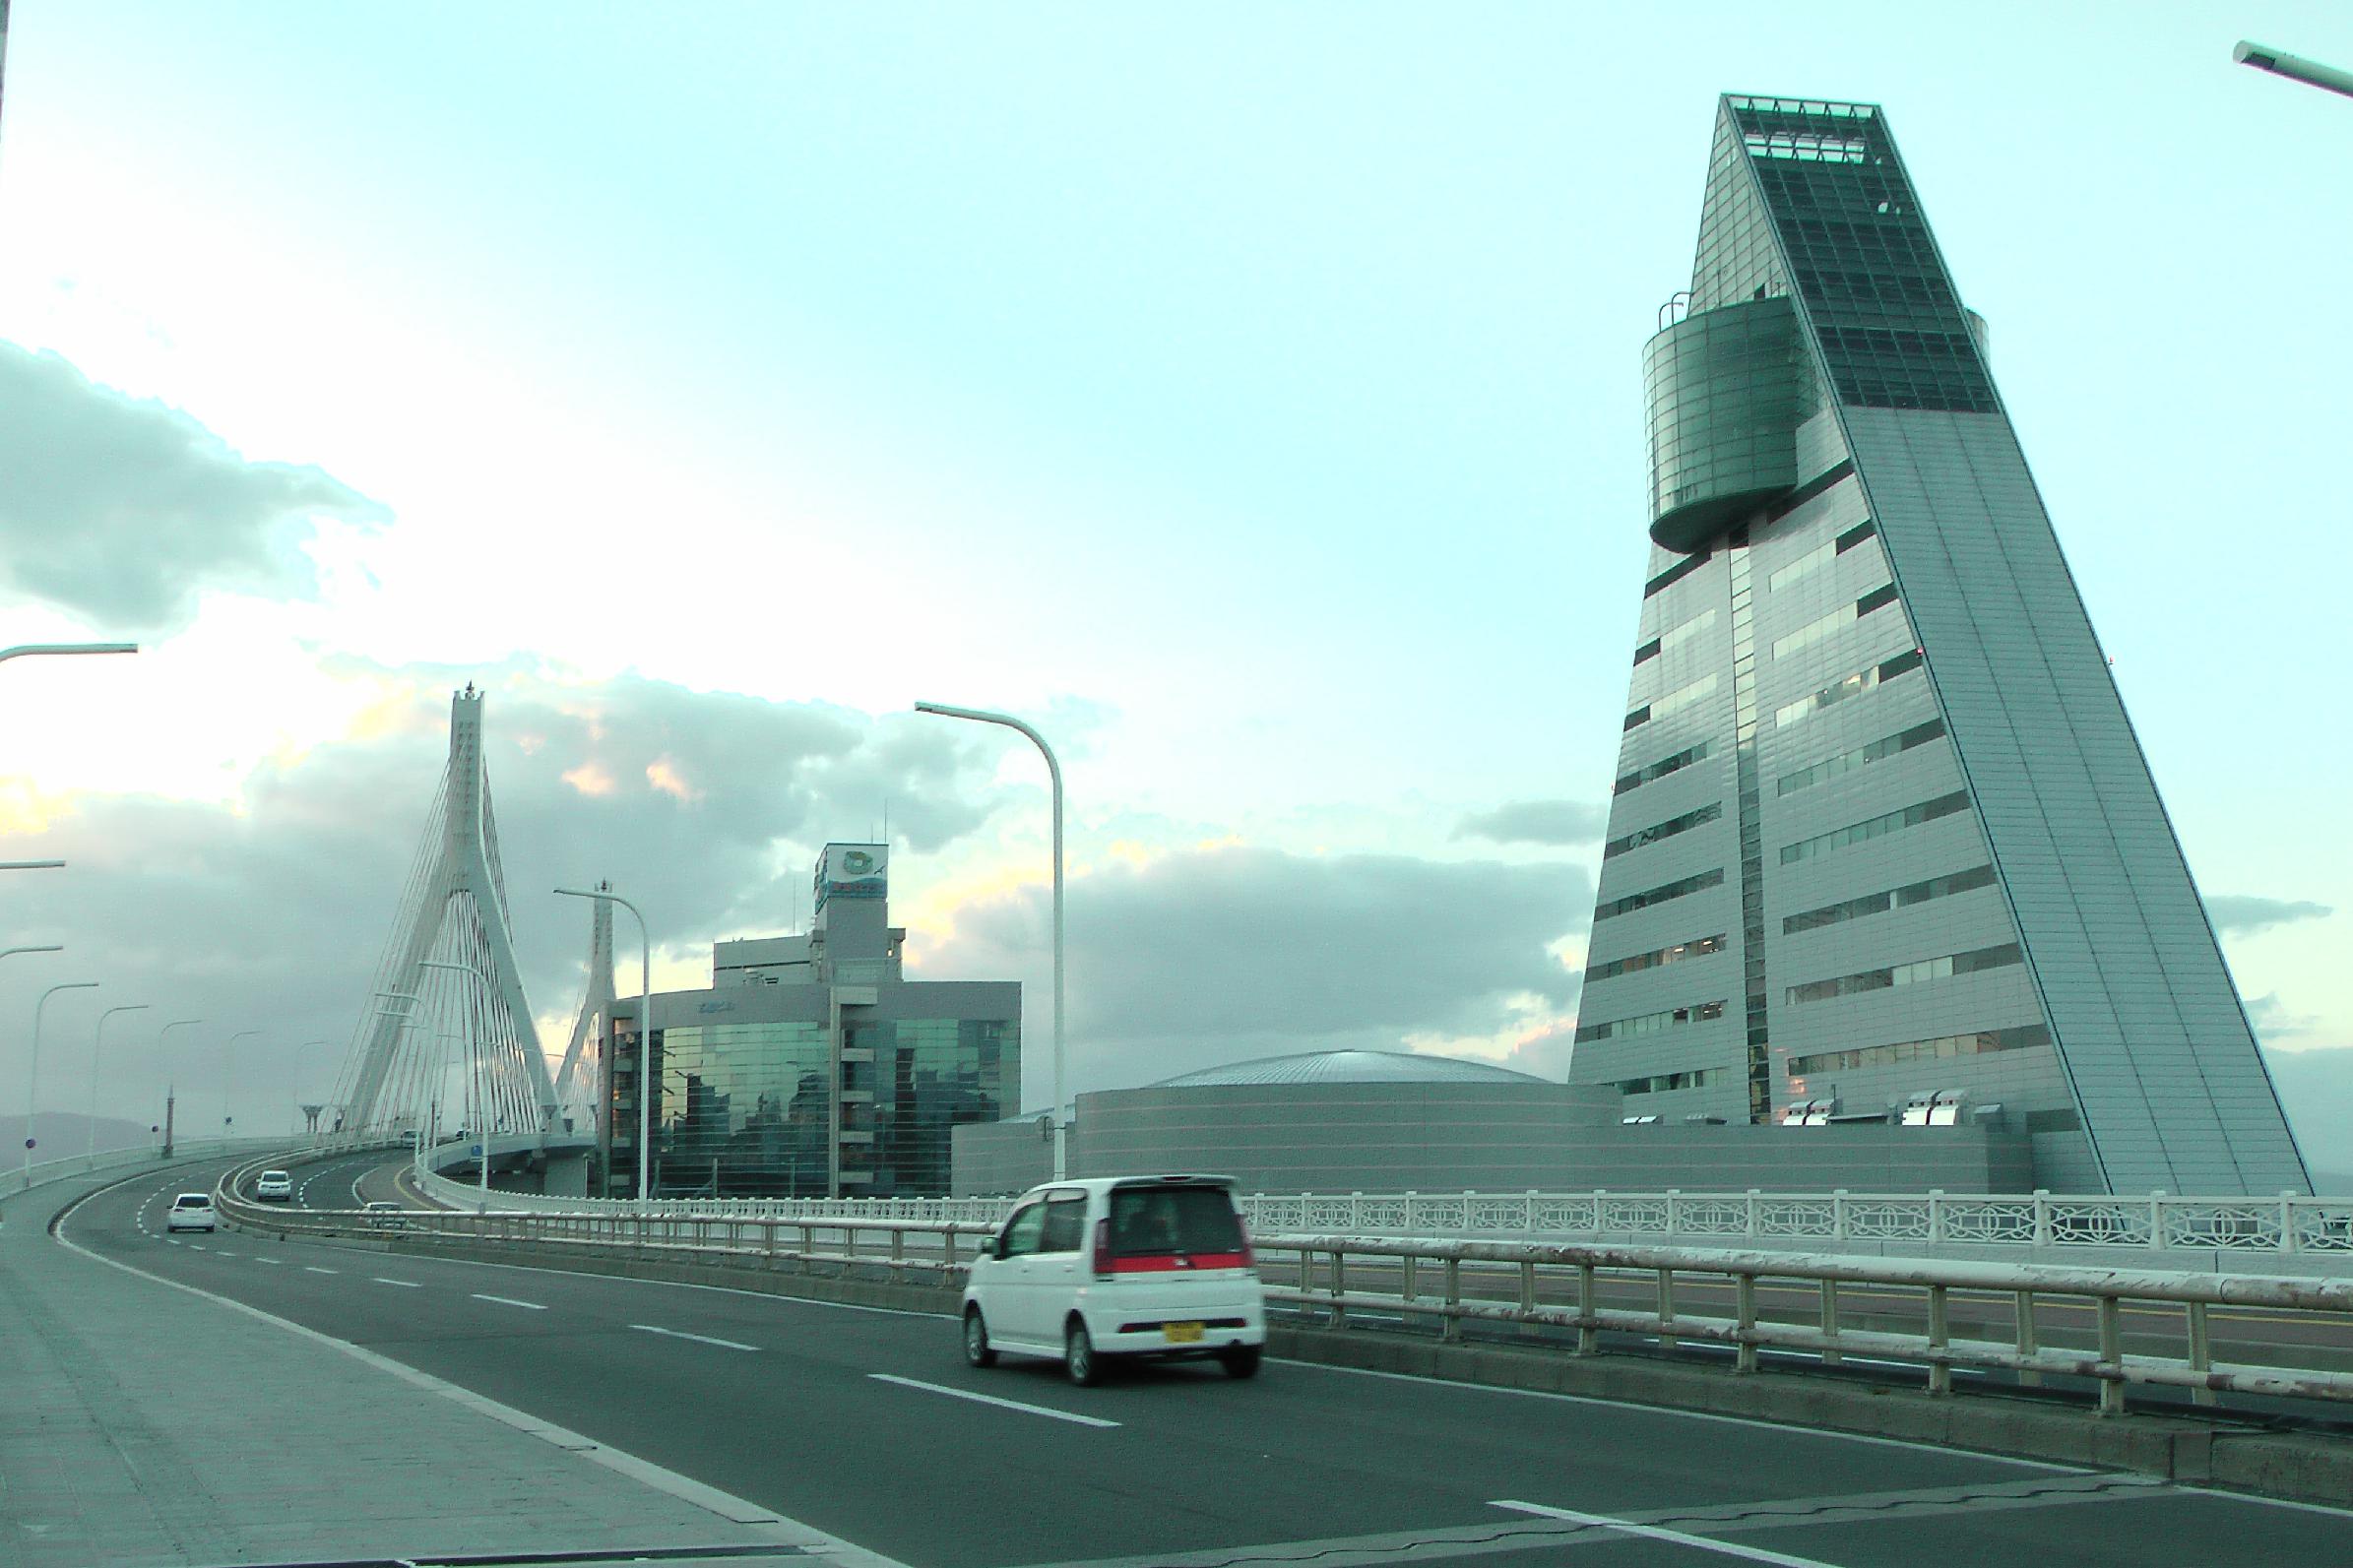 Aomori Prefecture Tourist Center and Aomori bay bridge